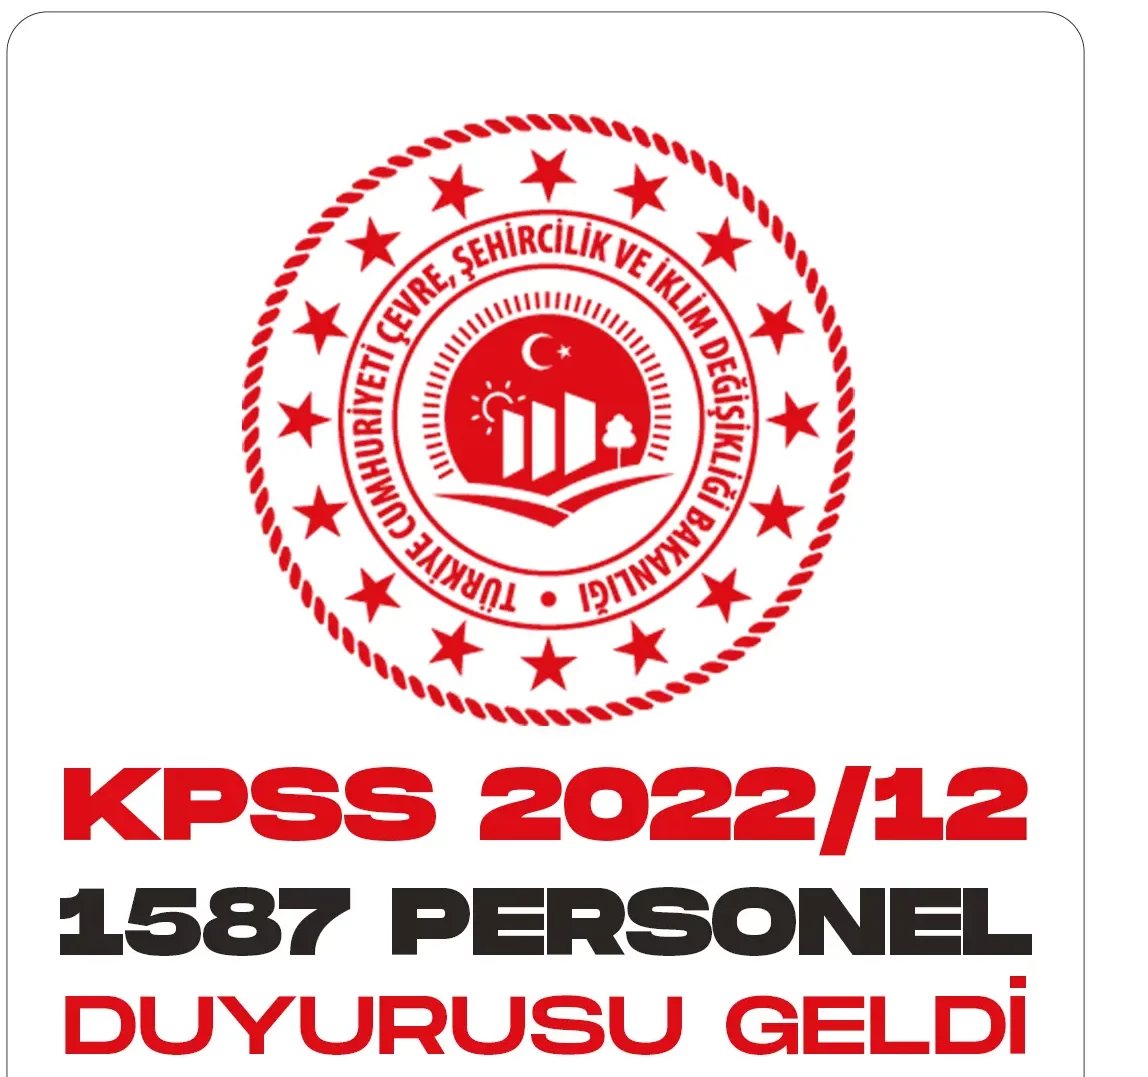 KPSS 2022 12 tercih sonuçları açıklandı.